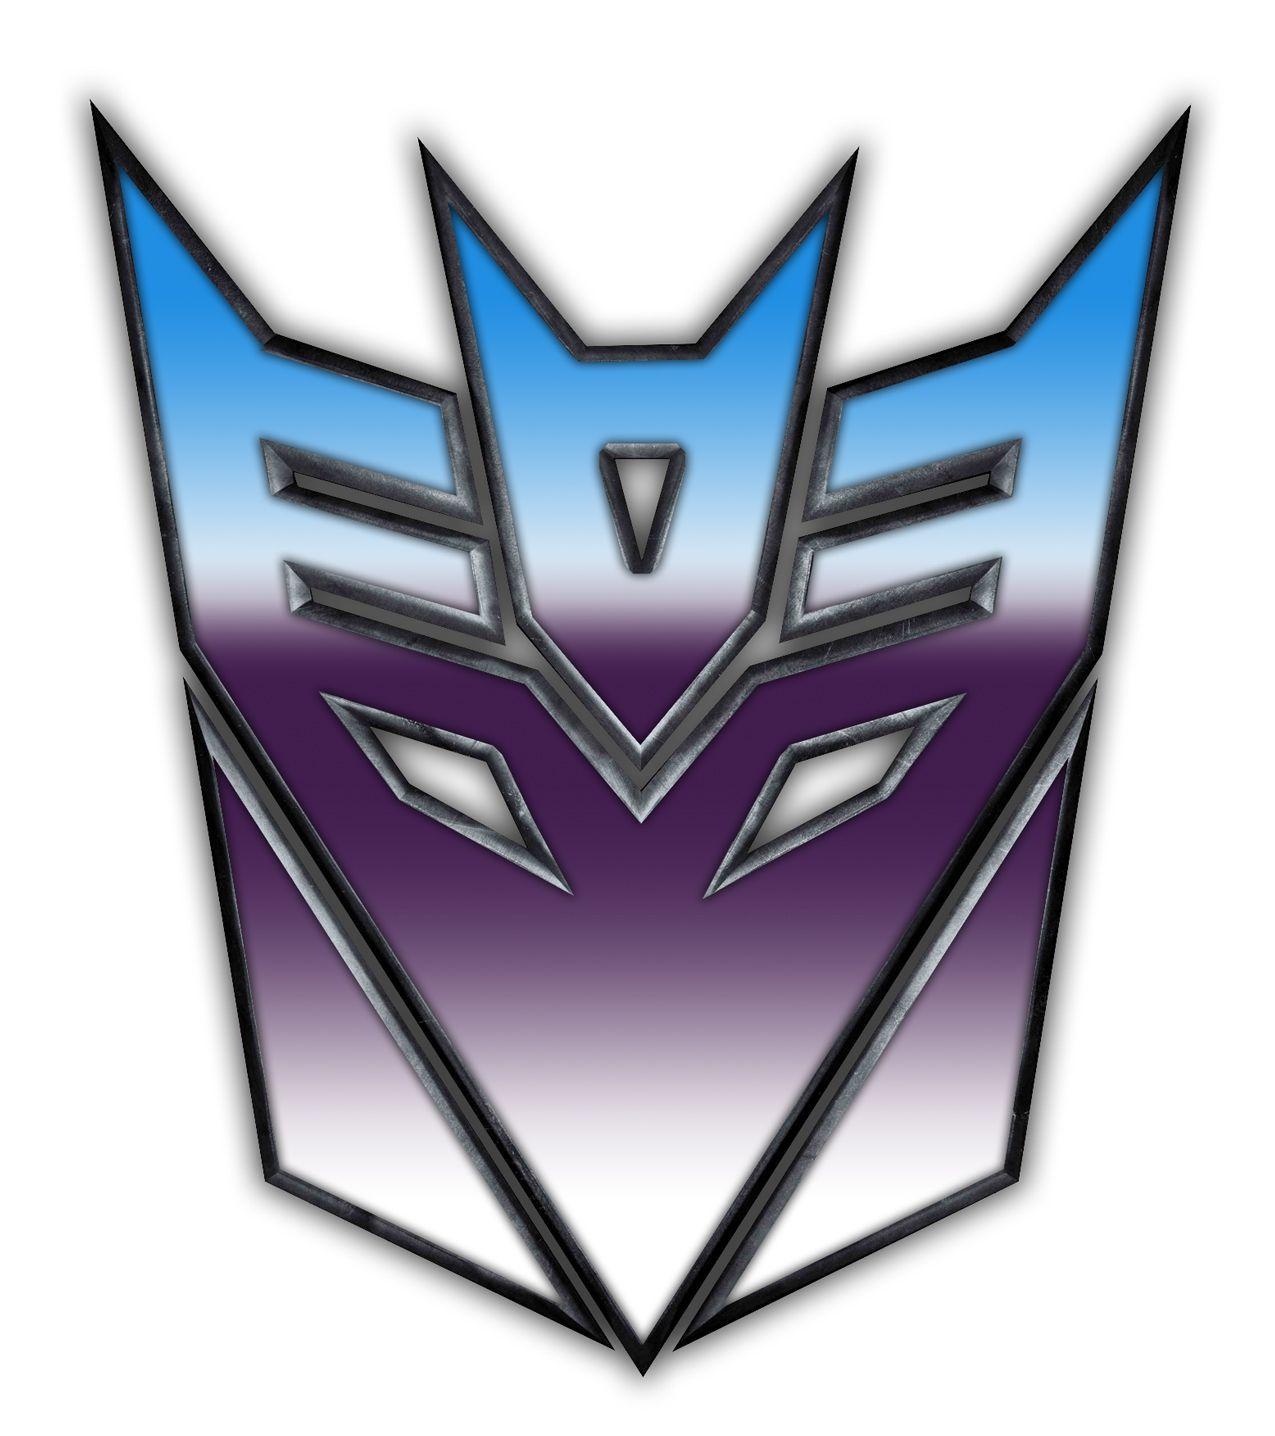 Decepticon Transformers Logo - Transformers decepticon Logos